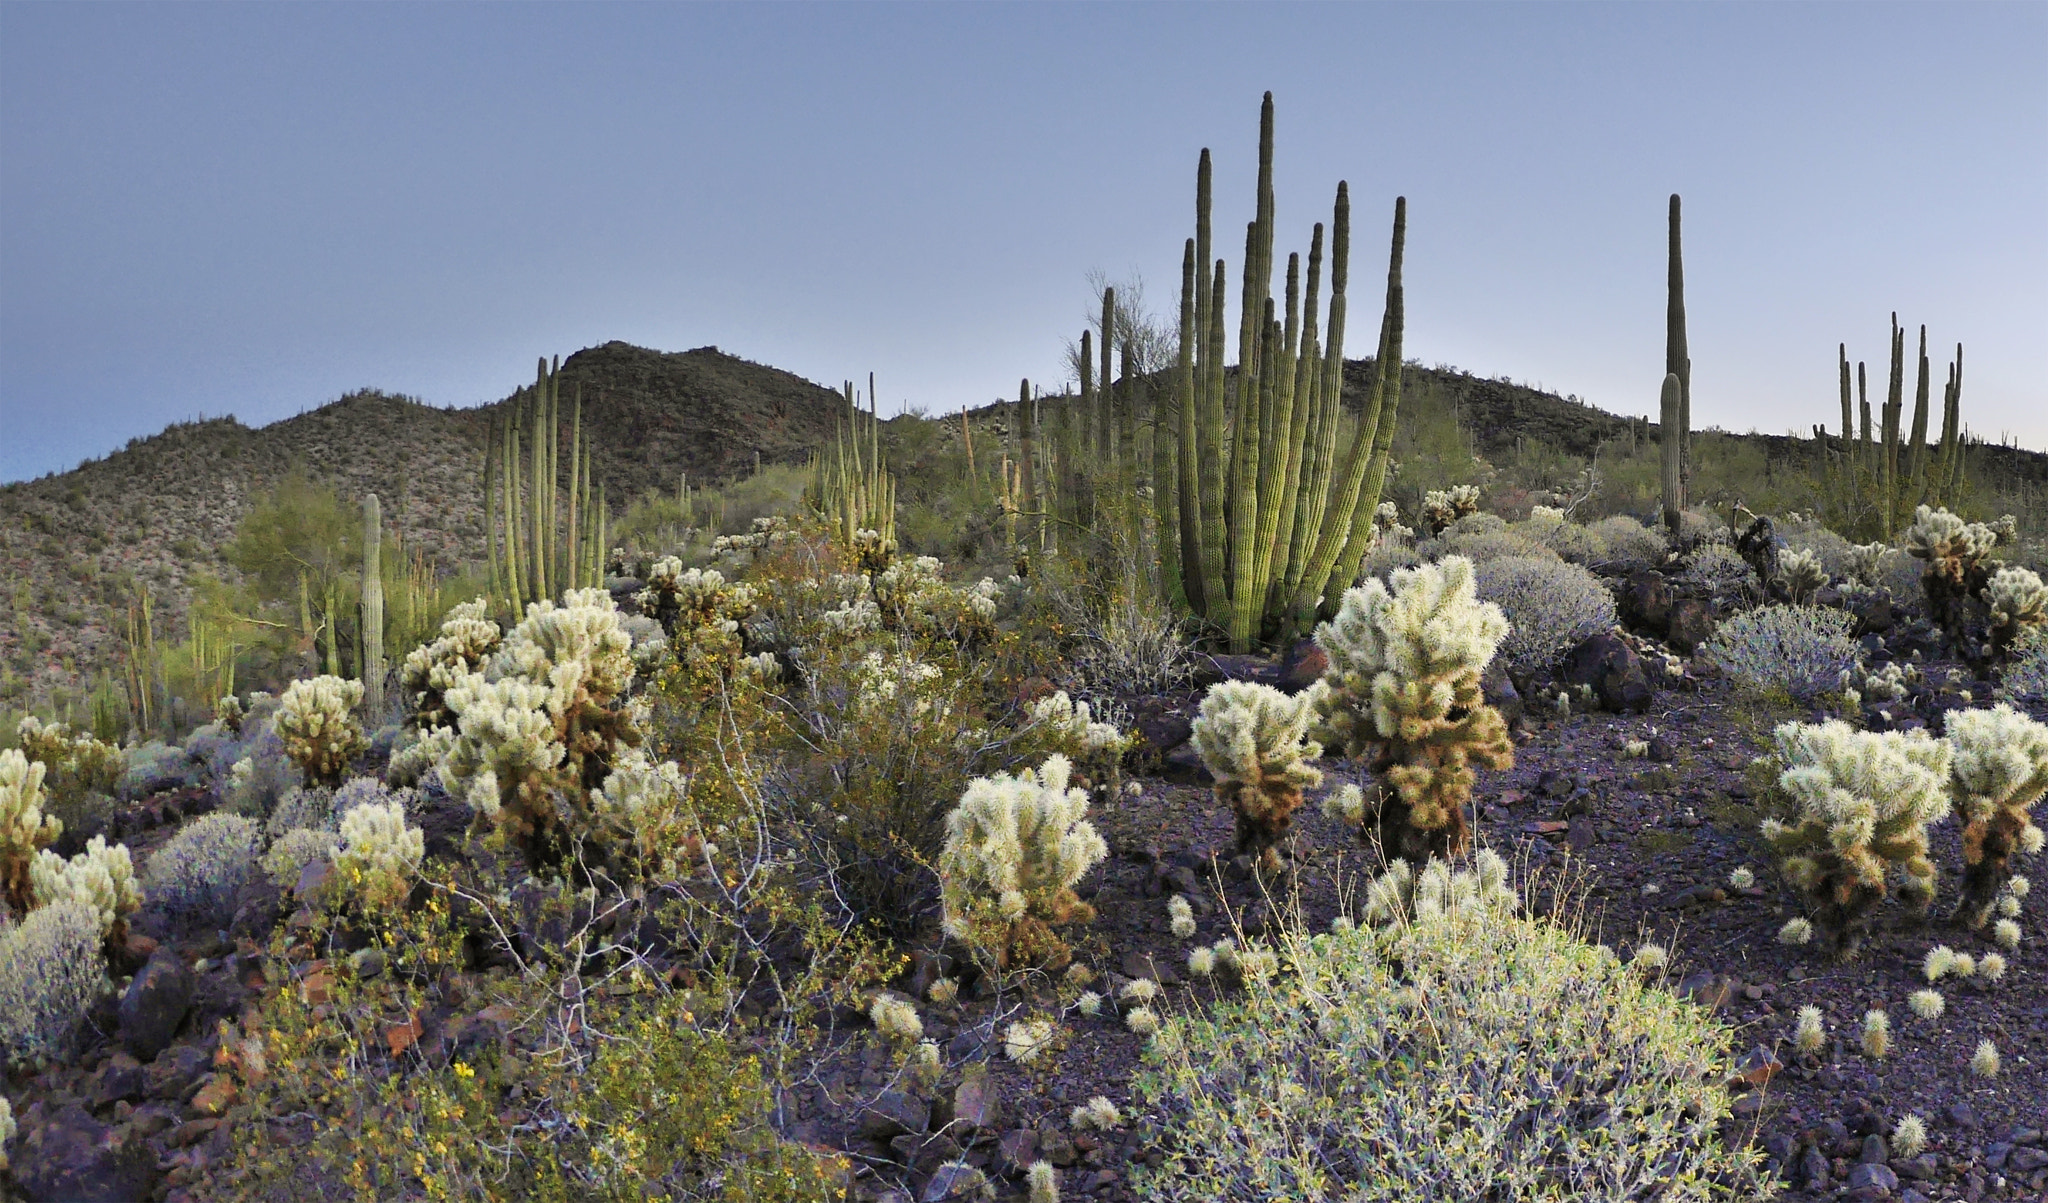 Panasonic Lumix DMC-GM5 + LUMIX G FISHEYE 8/F3.5 sample photo. Sonoran desert cacti photography